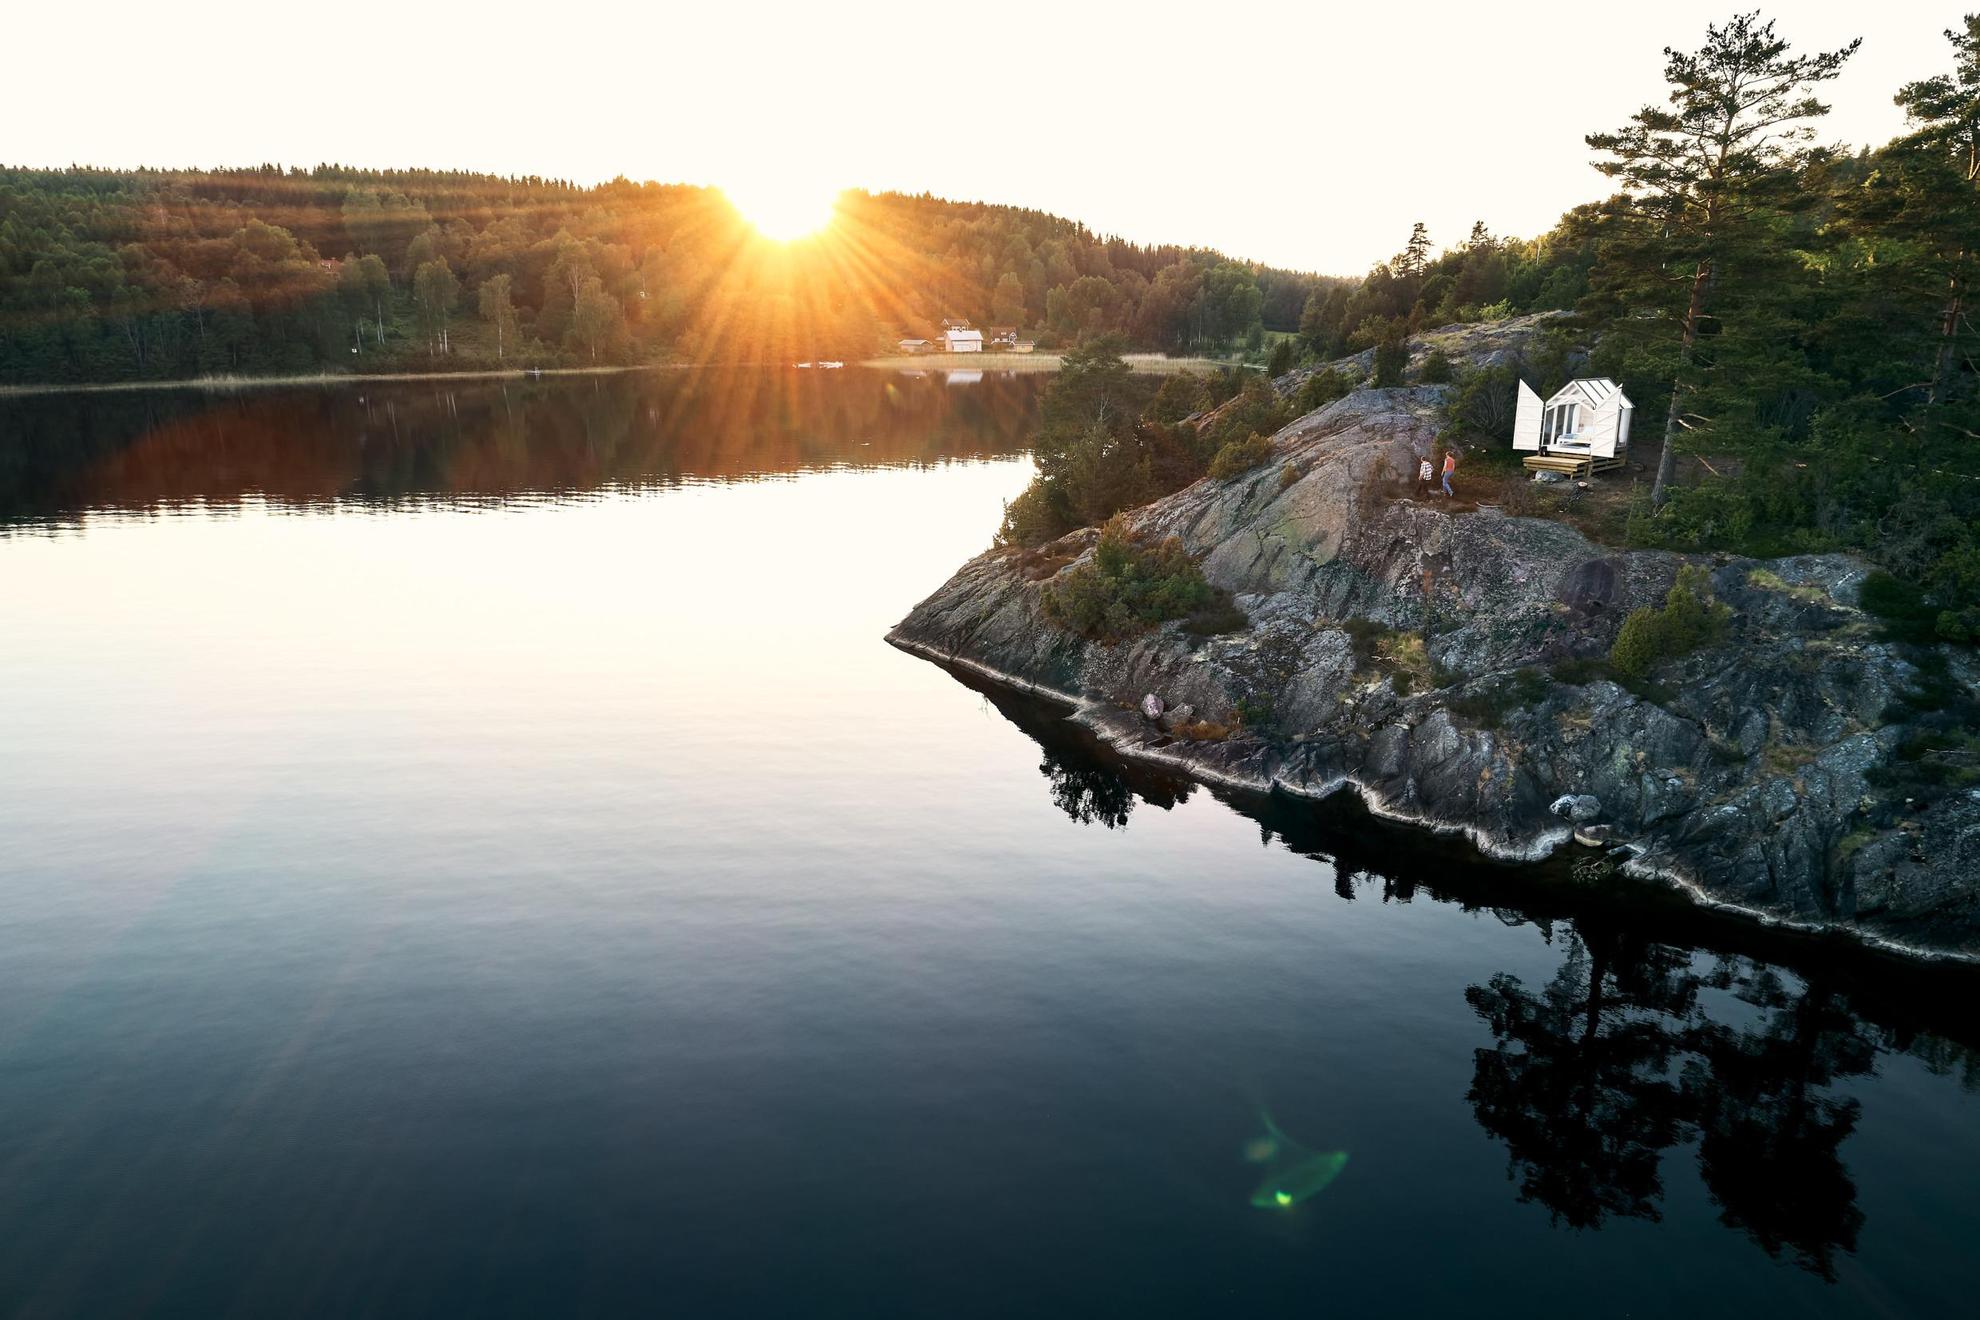 Blick auf eine Glashütte auf einer Klippe an einem See. Vor der Kabine laufen zwei Personen. Die Sonne geht hinter dem Wald unter.